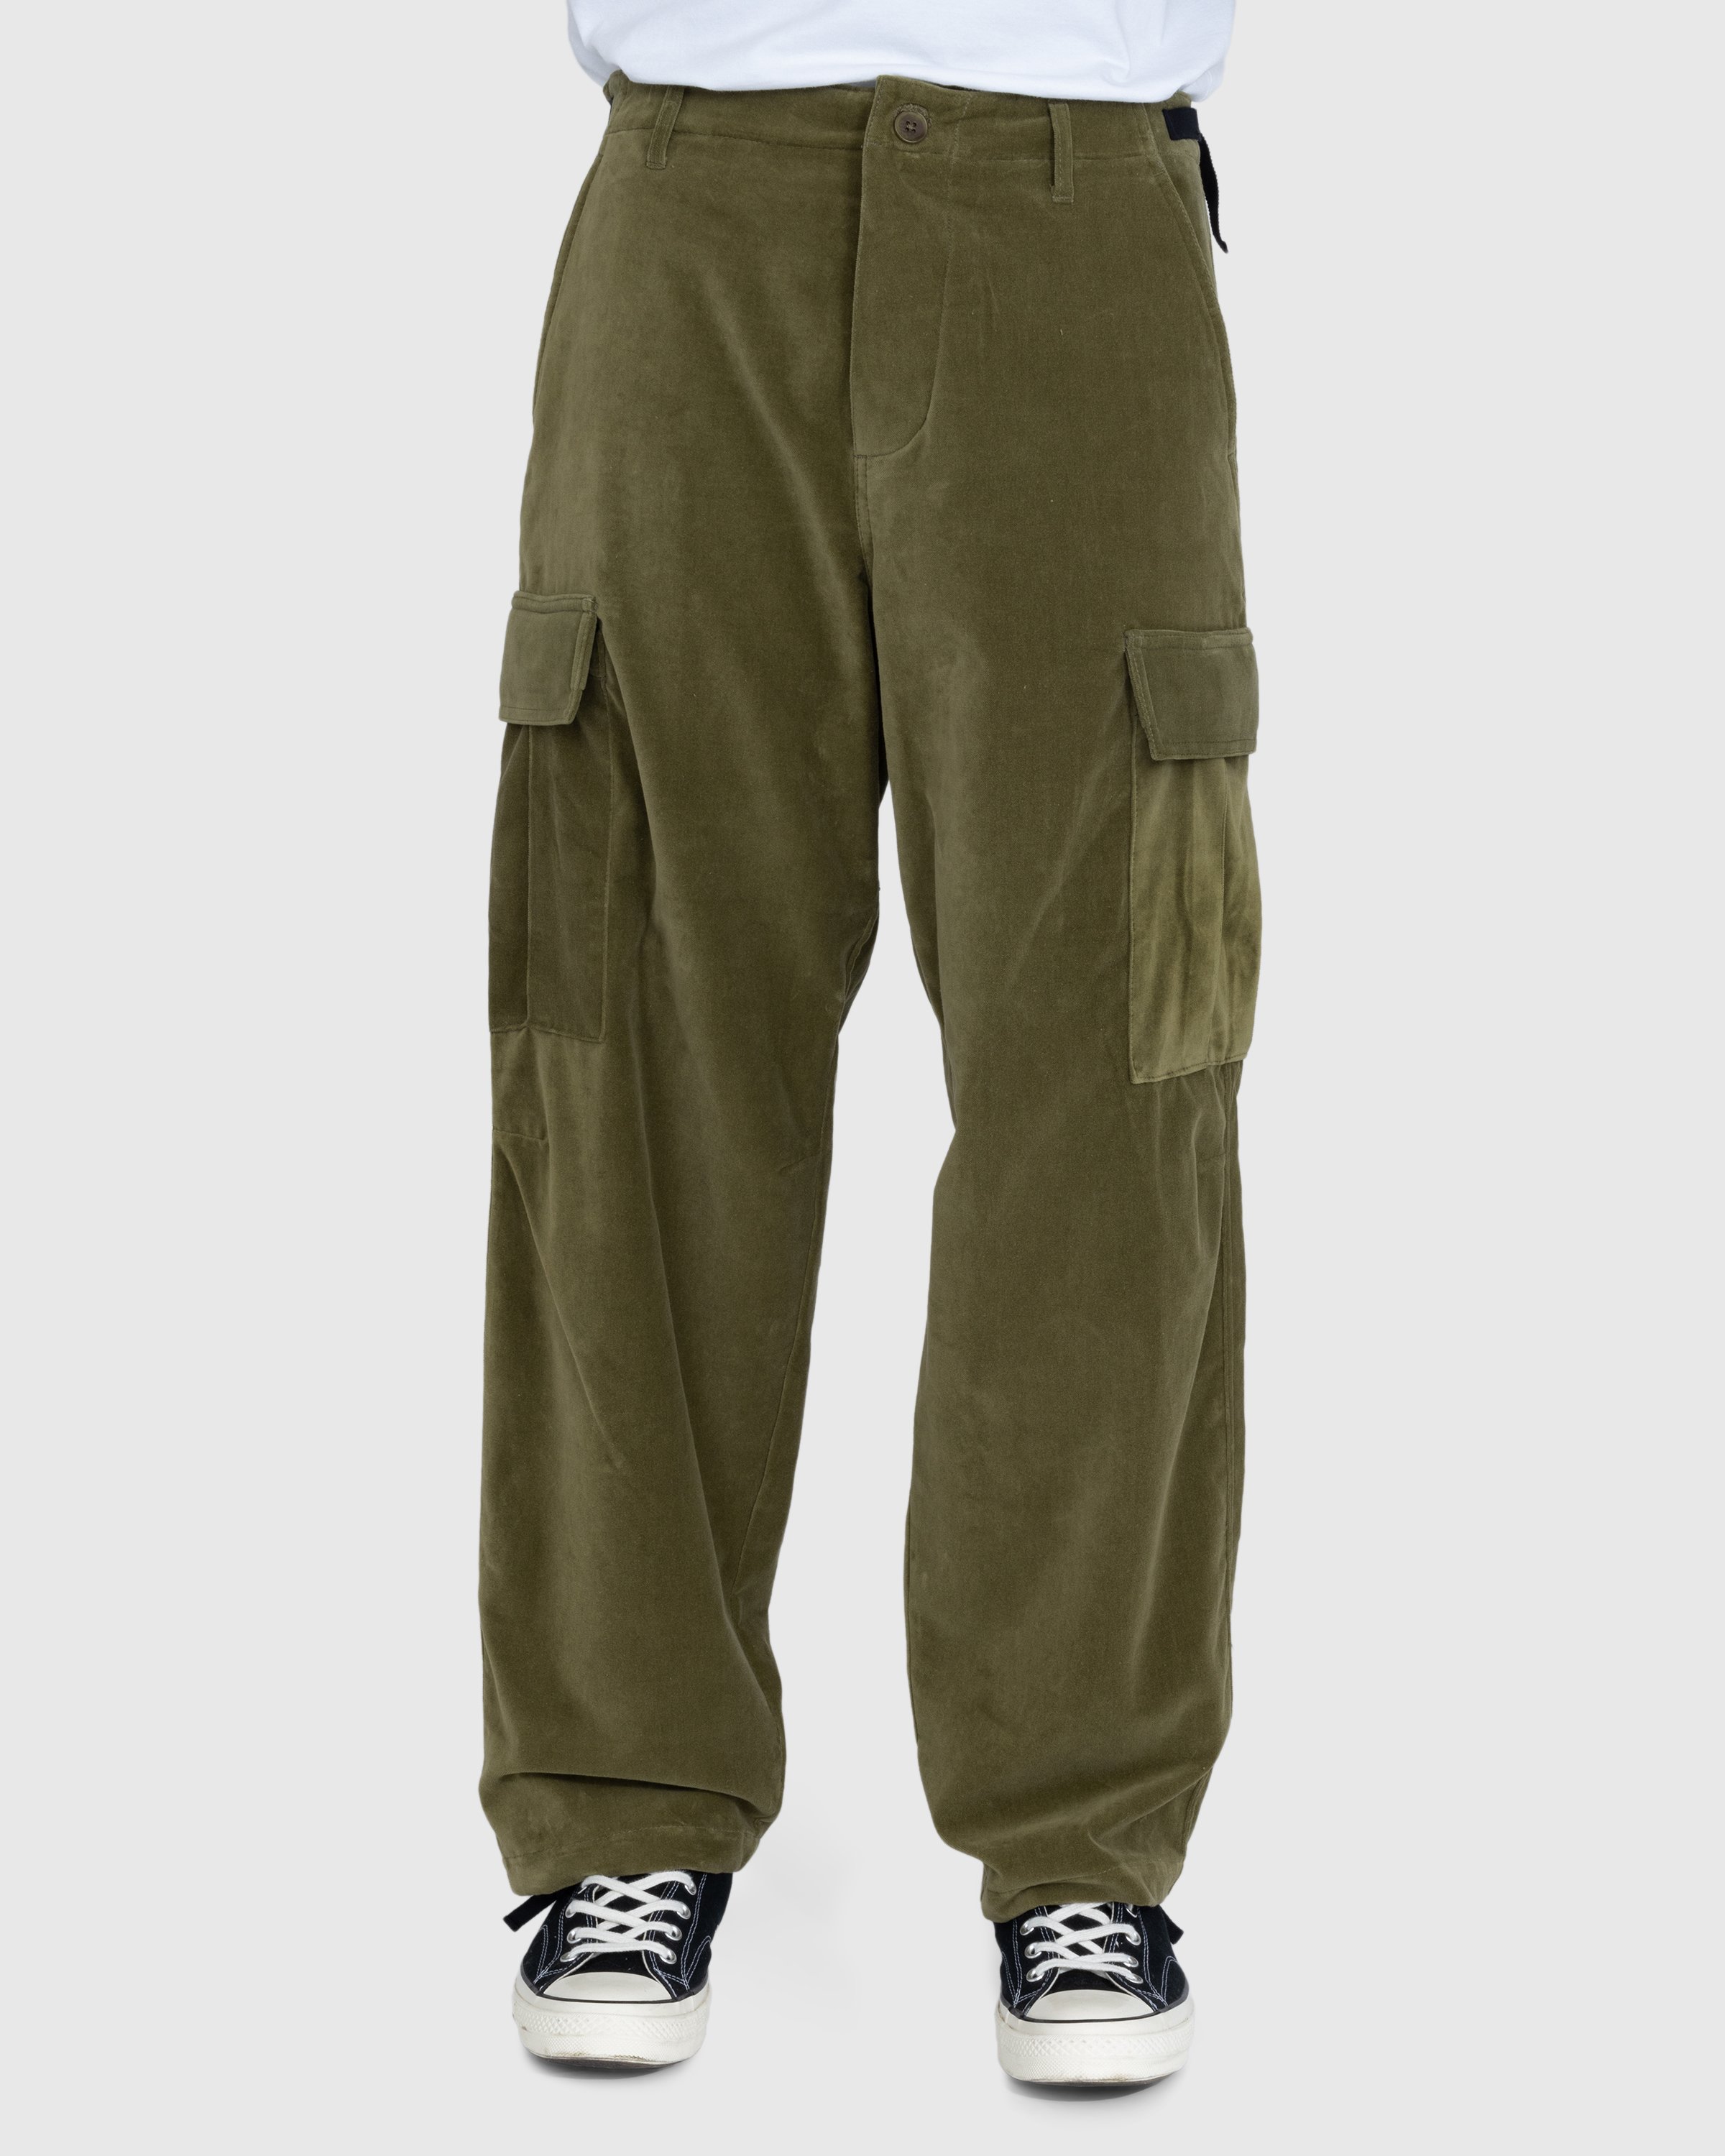 Highsnobiety - Moleskin Cargo Pant Olive - Clothing - Green - Image 2